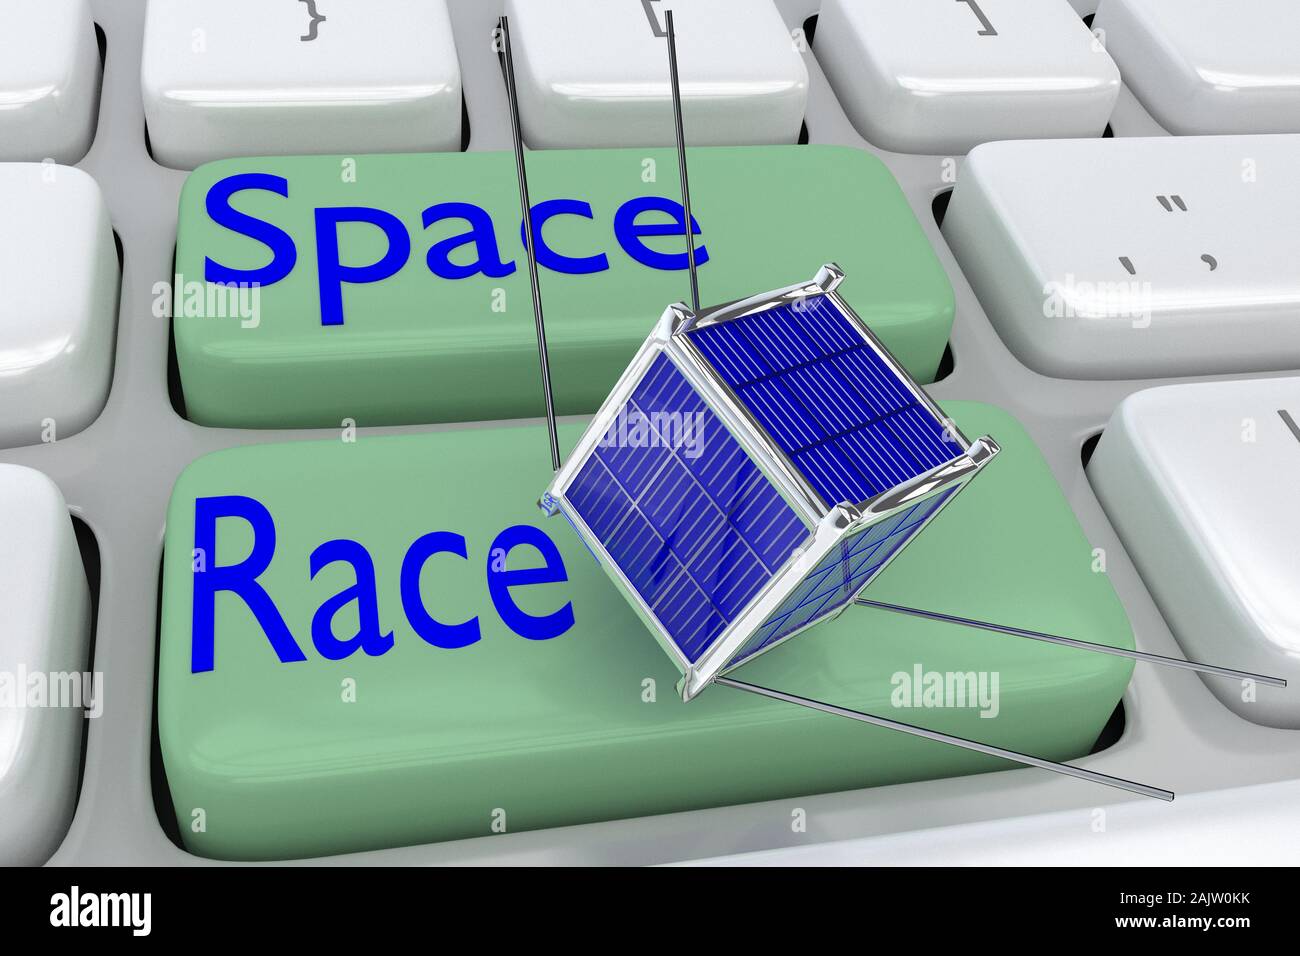 Ilustración 3D de teclado de computadora con el script carrera espacial en  dos adyacentes, los botones verde pálido y un nano satélite flotando encima  de uno de estos b Fotografía de stock -